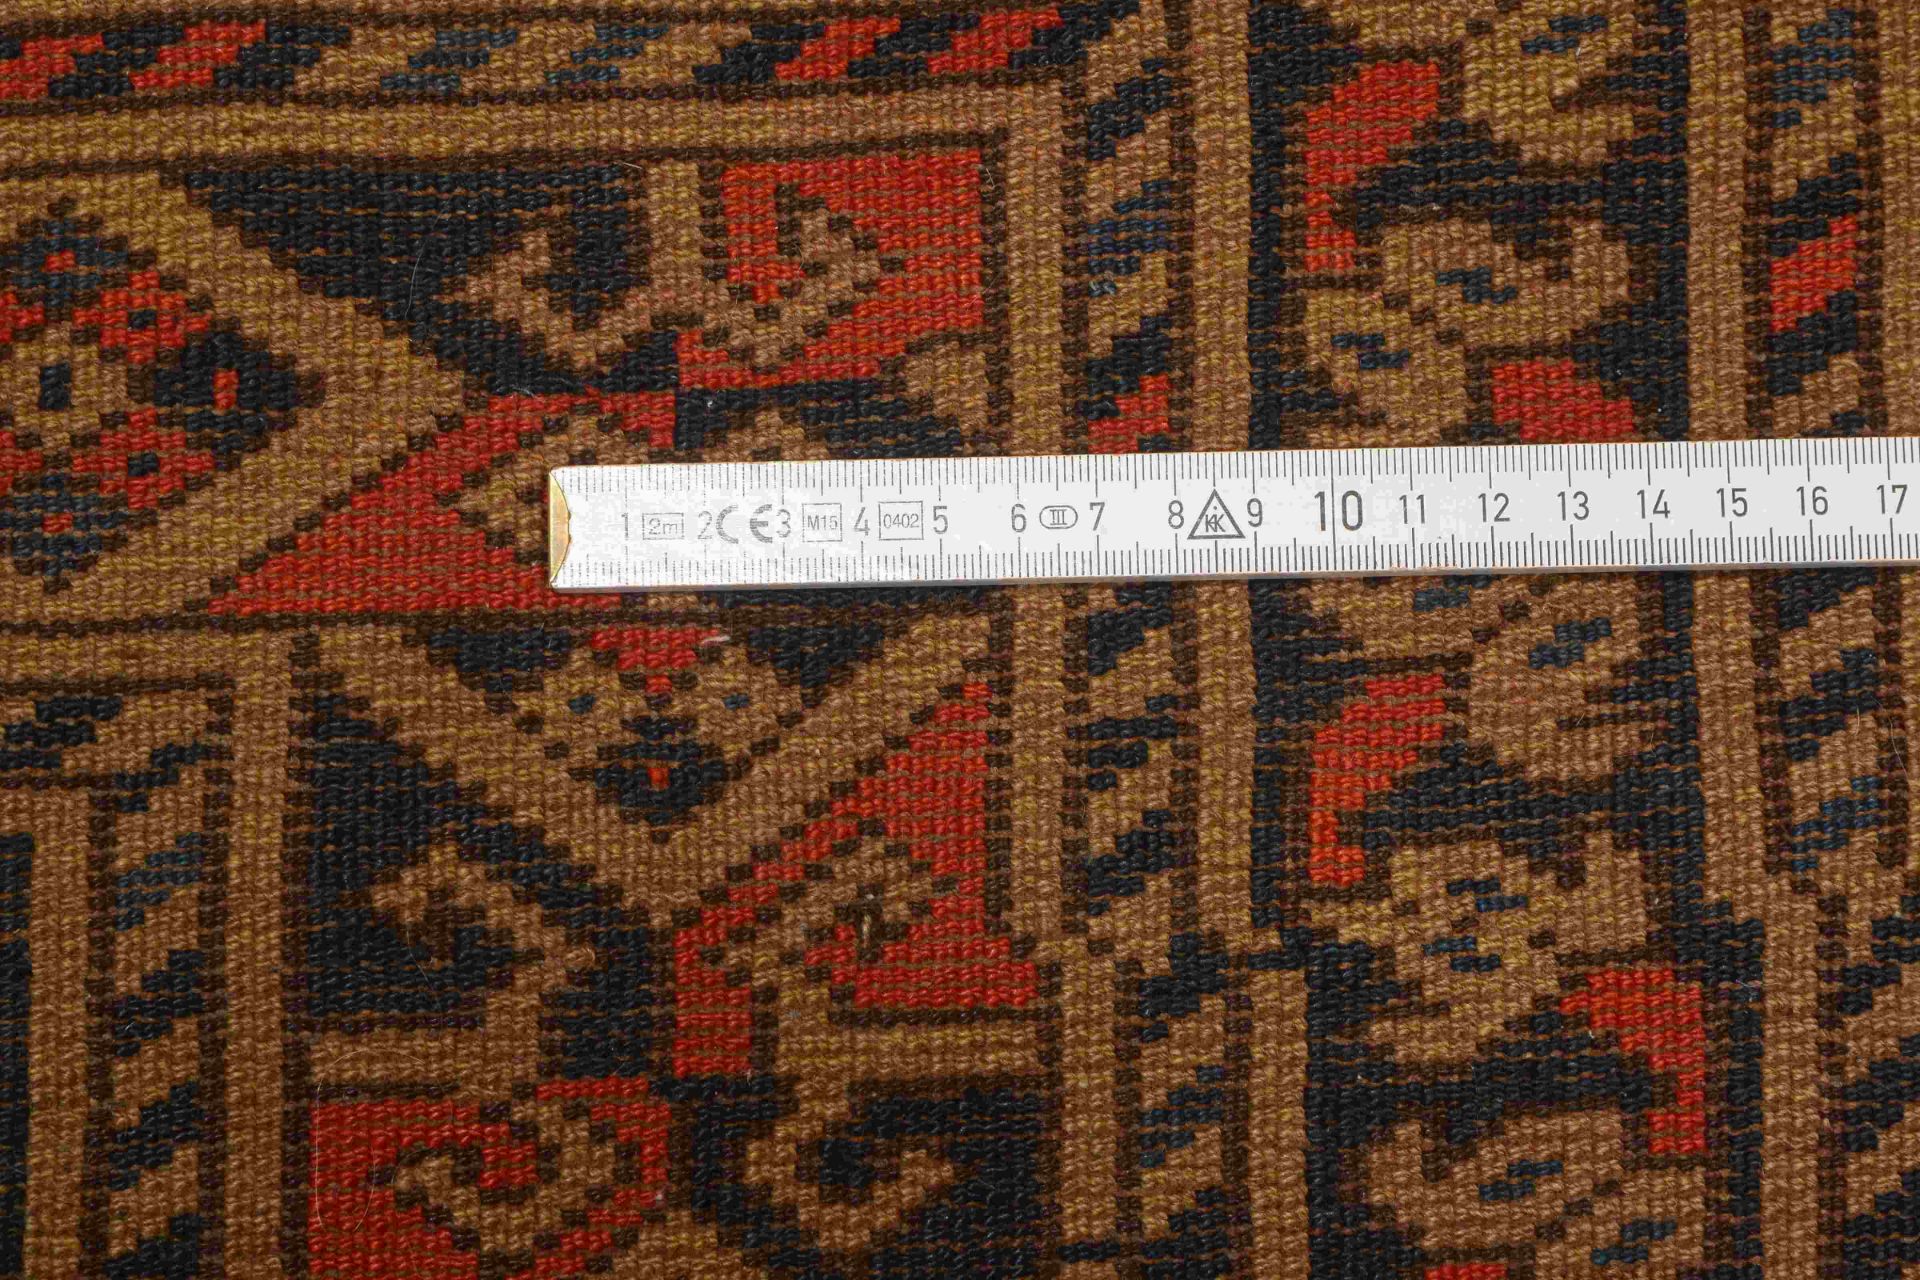 Orientteppich (Usbekistan), Wolle auf Wolle, goldfarbener Fond, Flor in gutem Zustand, neu festonier - Bild 2 aus 2